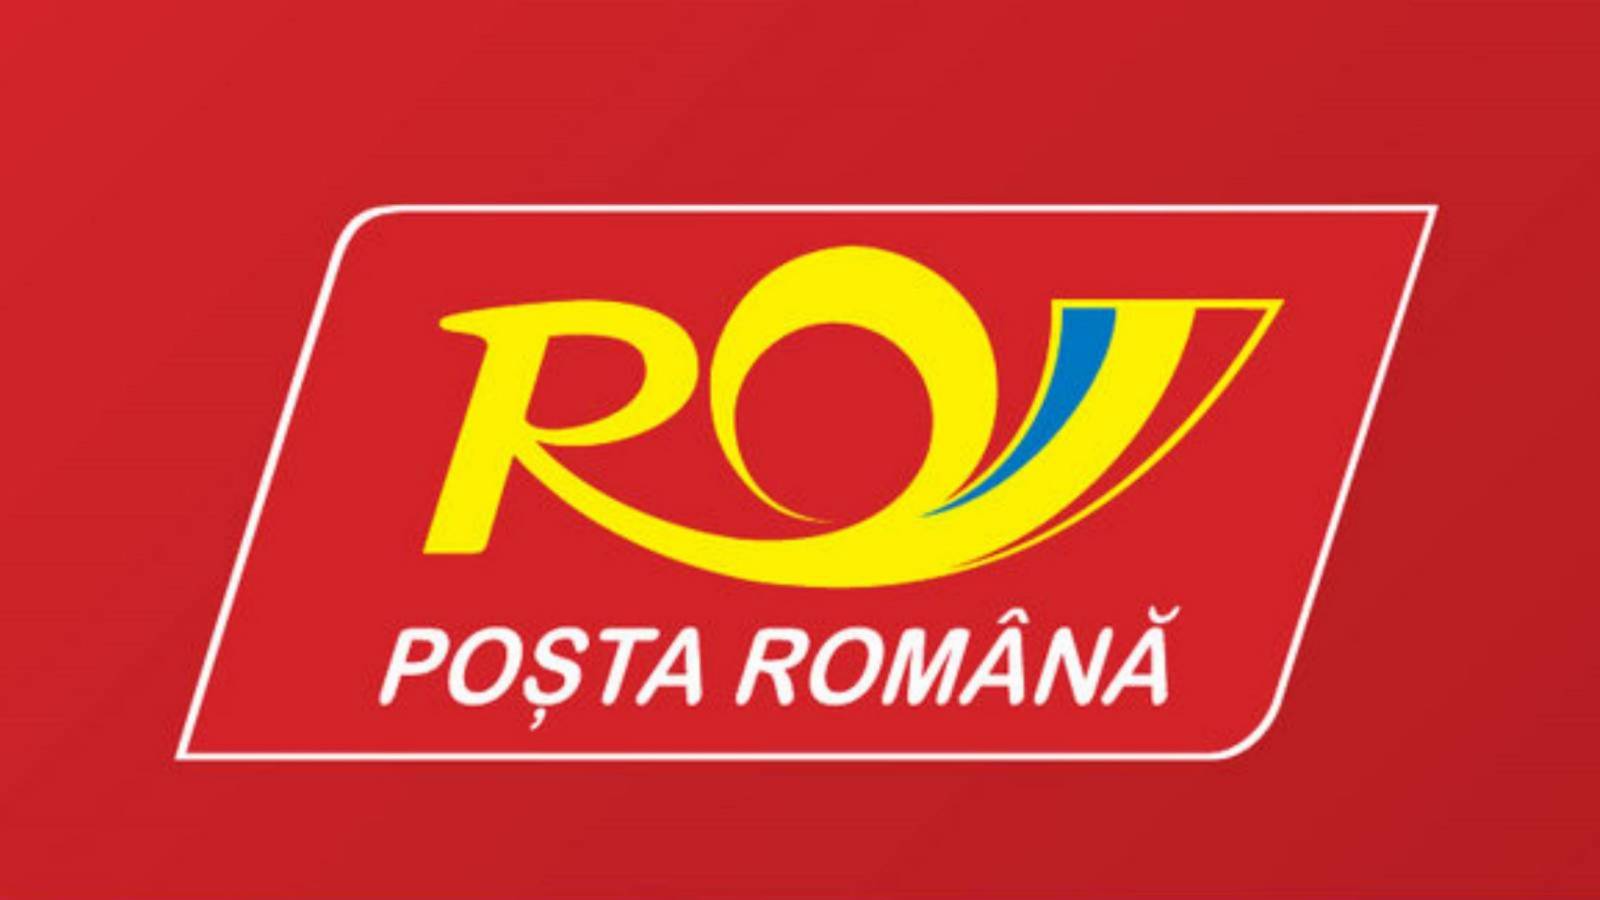 Informare Postei Romane Cand Distribuie Cardurile Sprijin Romania